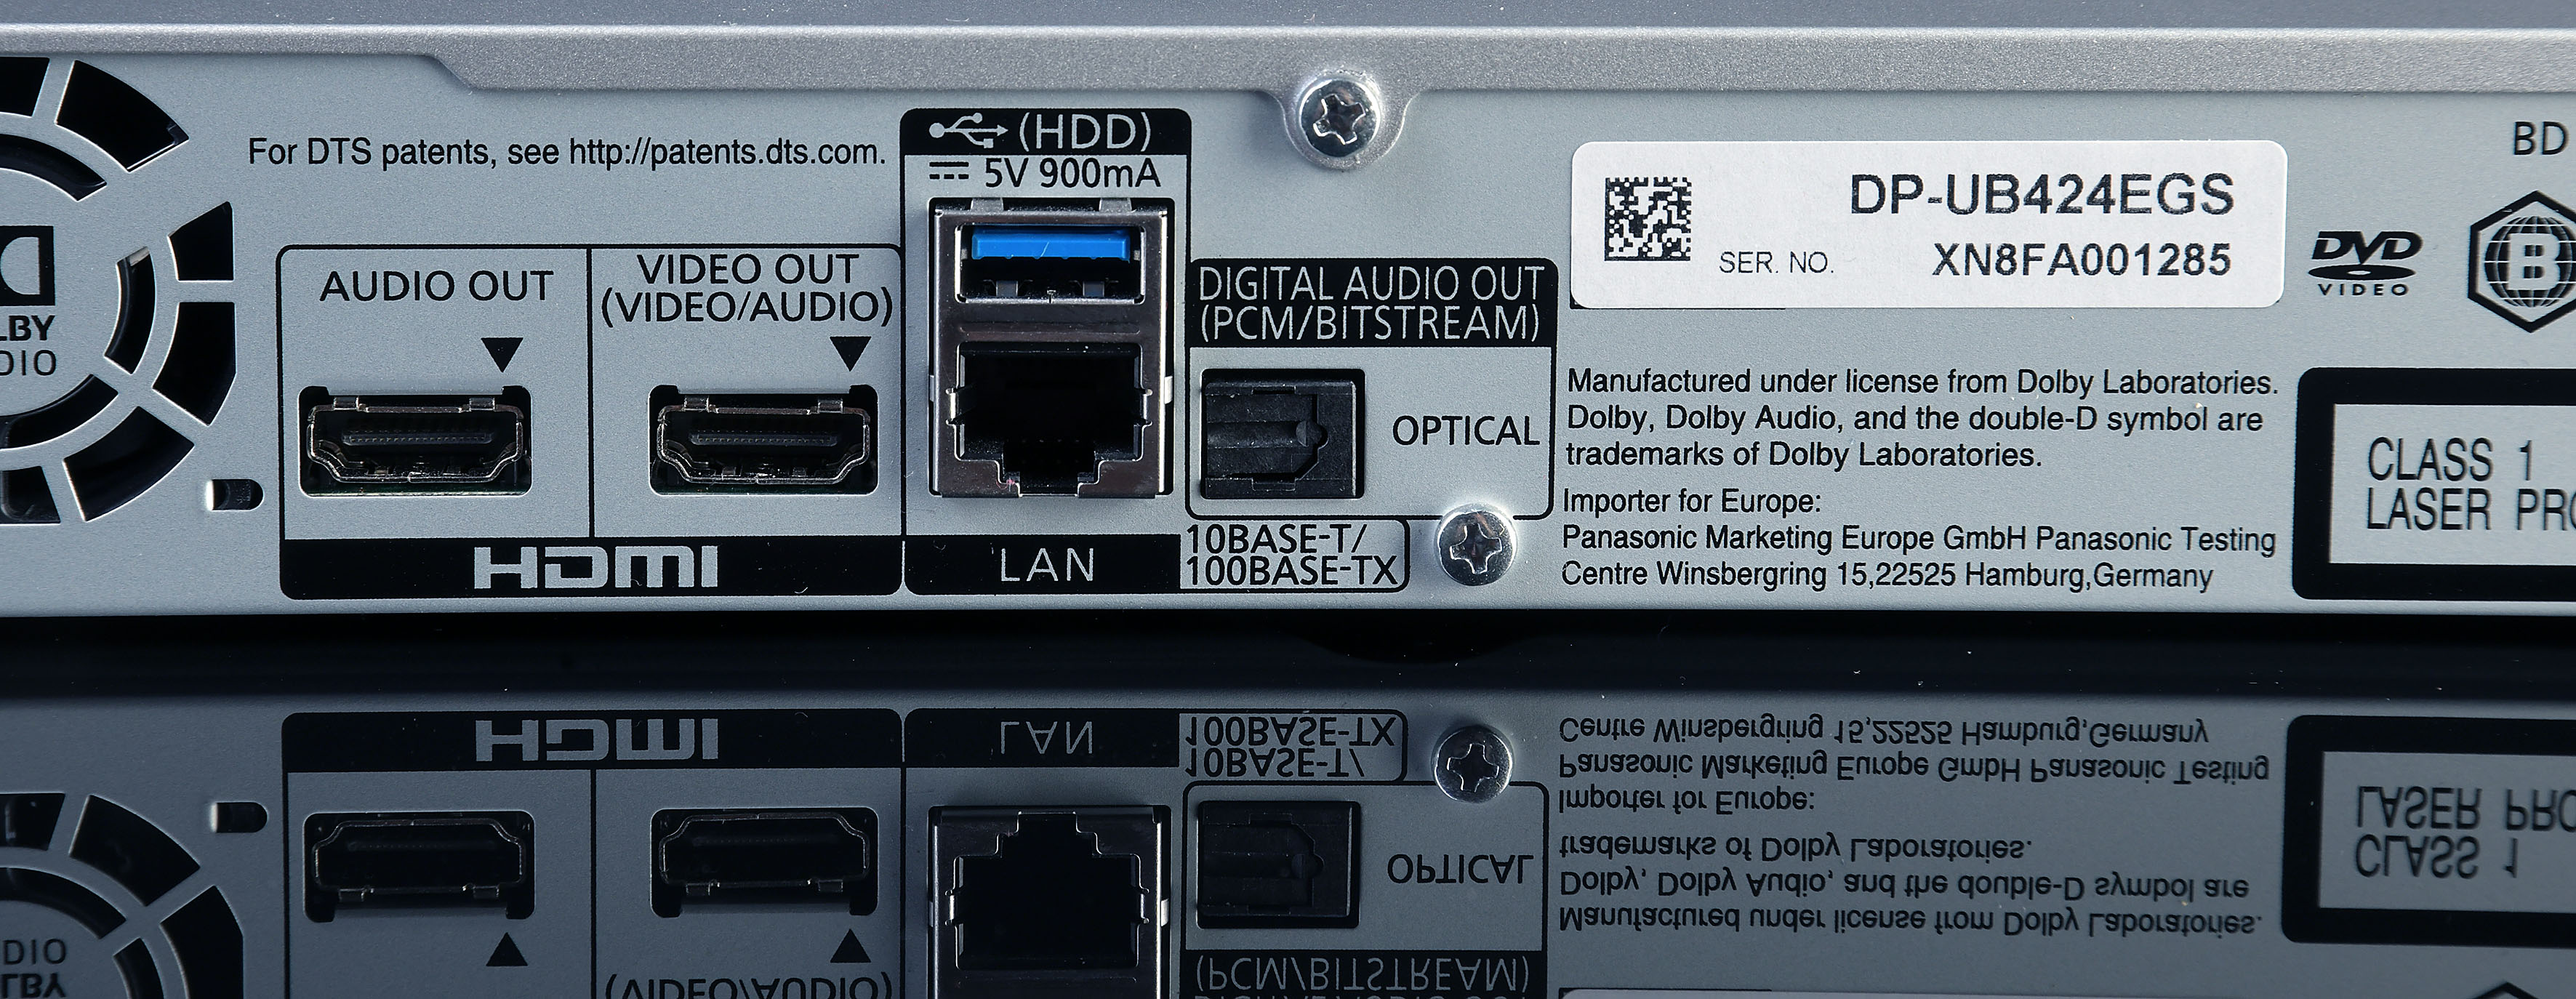 Foto: Michael B. Rehders Zwei HDMI-Ausgänge, eine LAN-Schnittstelle und ein optischer Ausgang gehören zur Ausstattung des Panasonic DP-UB424. Über den optischen Ausgang kann ein Tonsignal zusätzlich ausgegeben werden. Zum Beispiel von einer Musik-CD – oder wenn der AV-Receiver schon recht betagt ist, kann damit der Mehrkanalton übertragen werden.